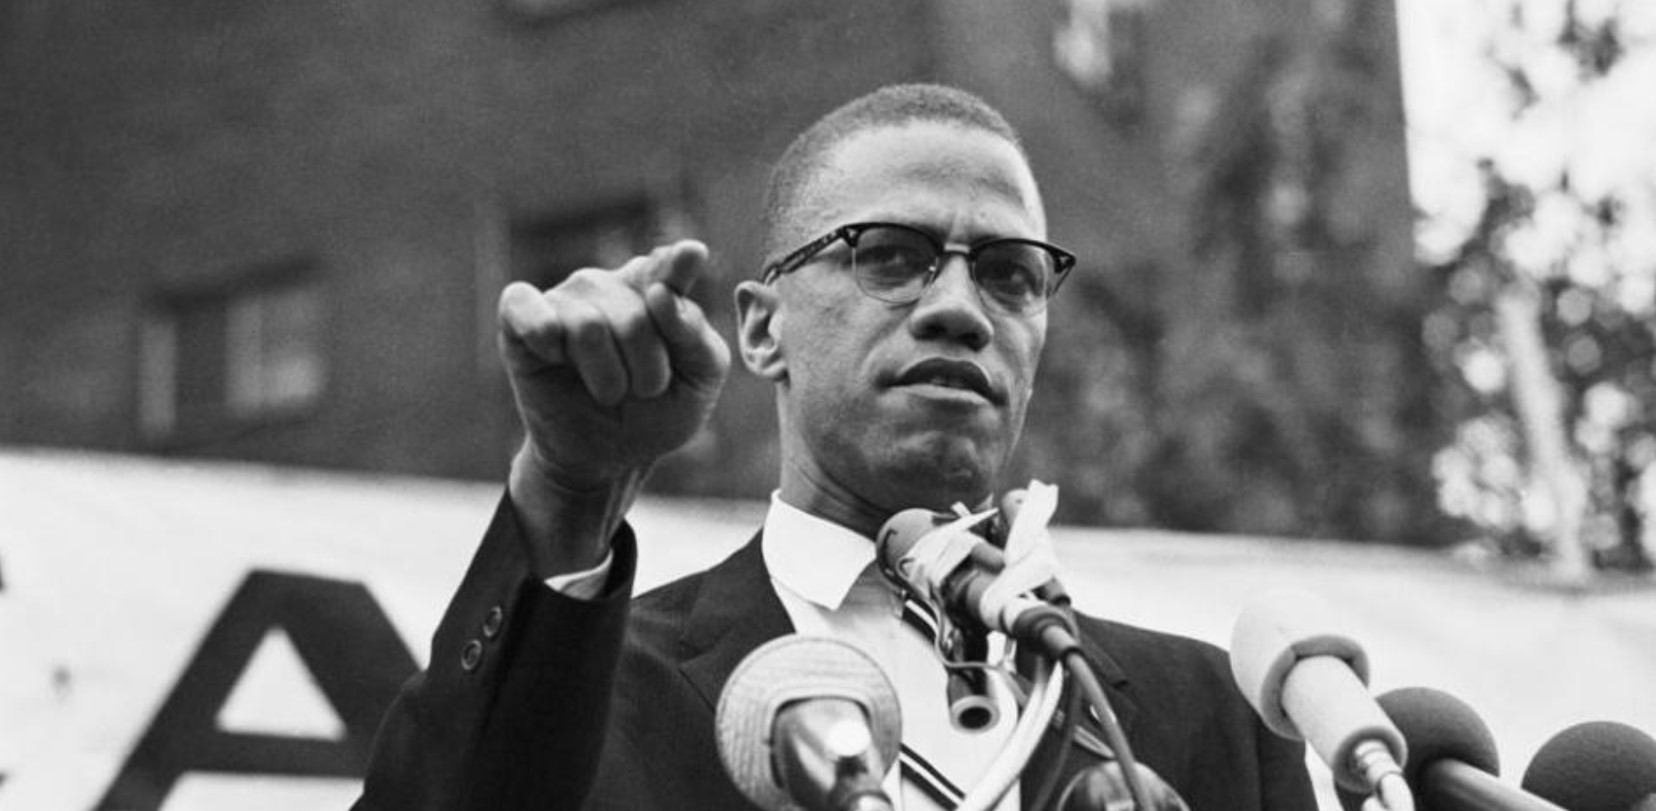 Dos hombres sentenciados por el asesinato de Malcolm X podrían ser absueltos